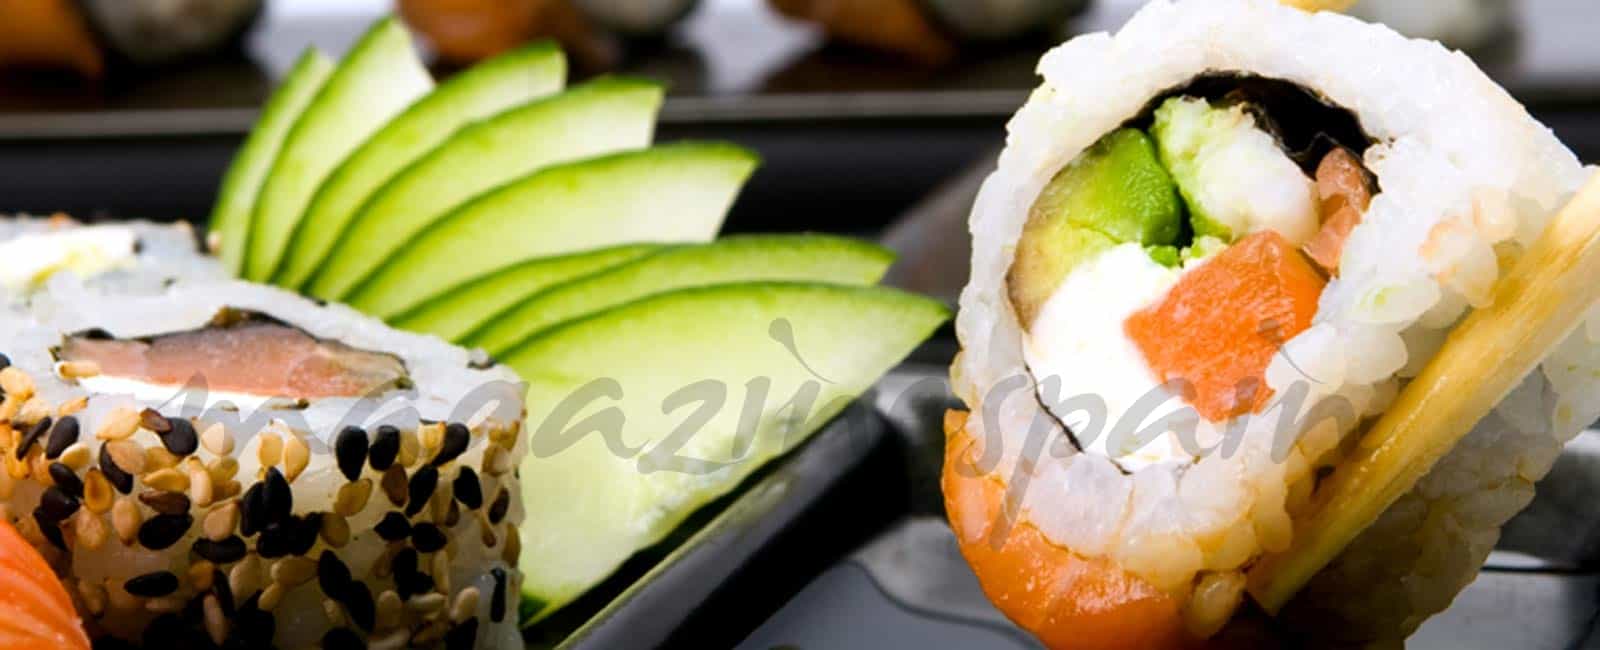 Hiwakaya Sushi fusión: Japón y Perú, sublime encuentro culinario